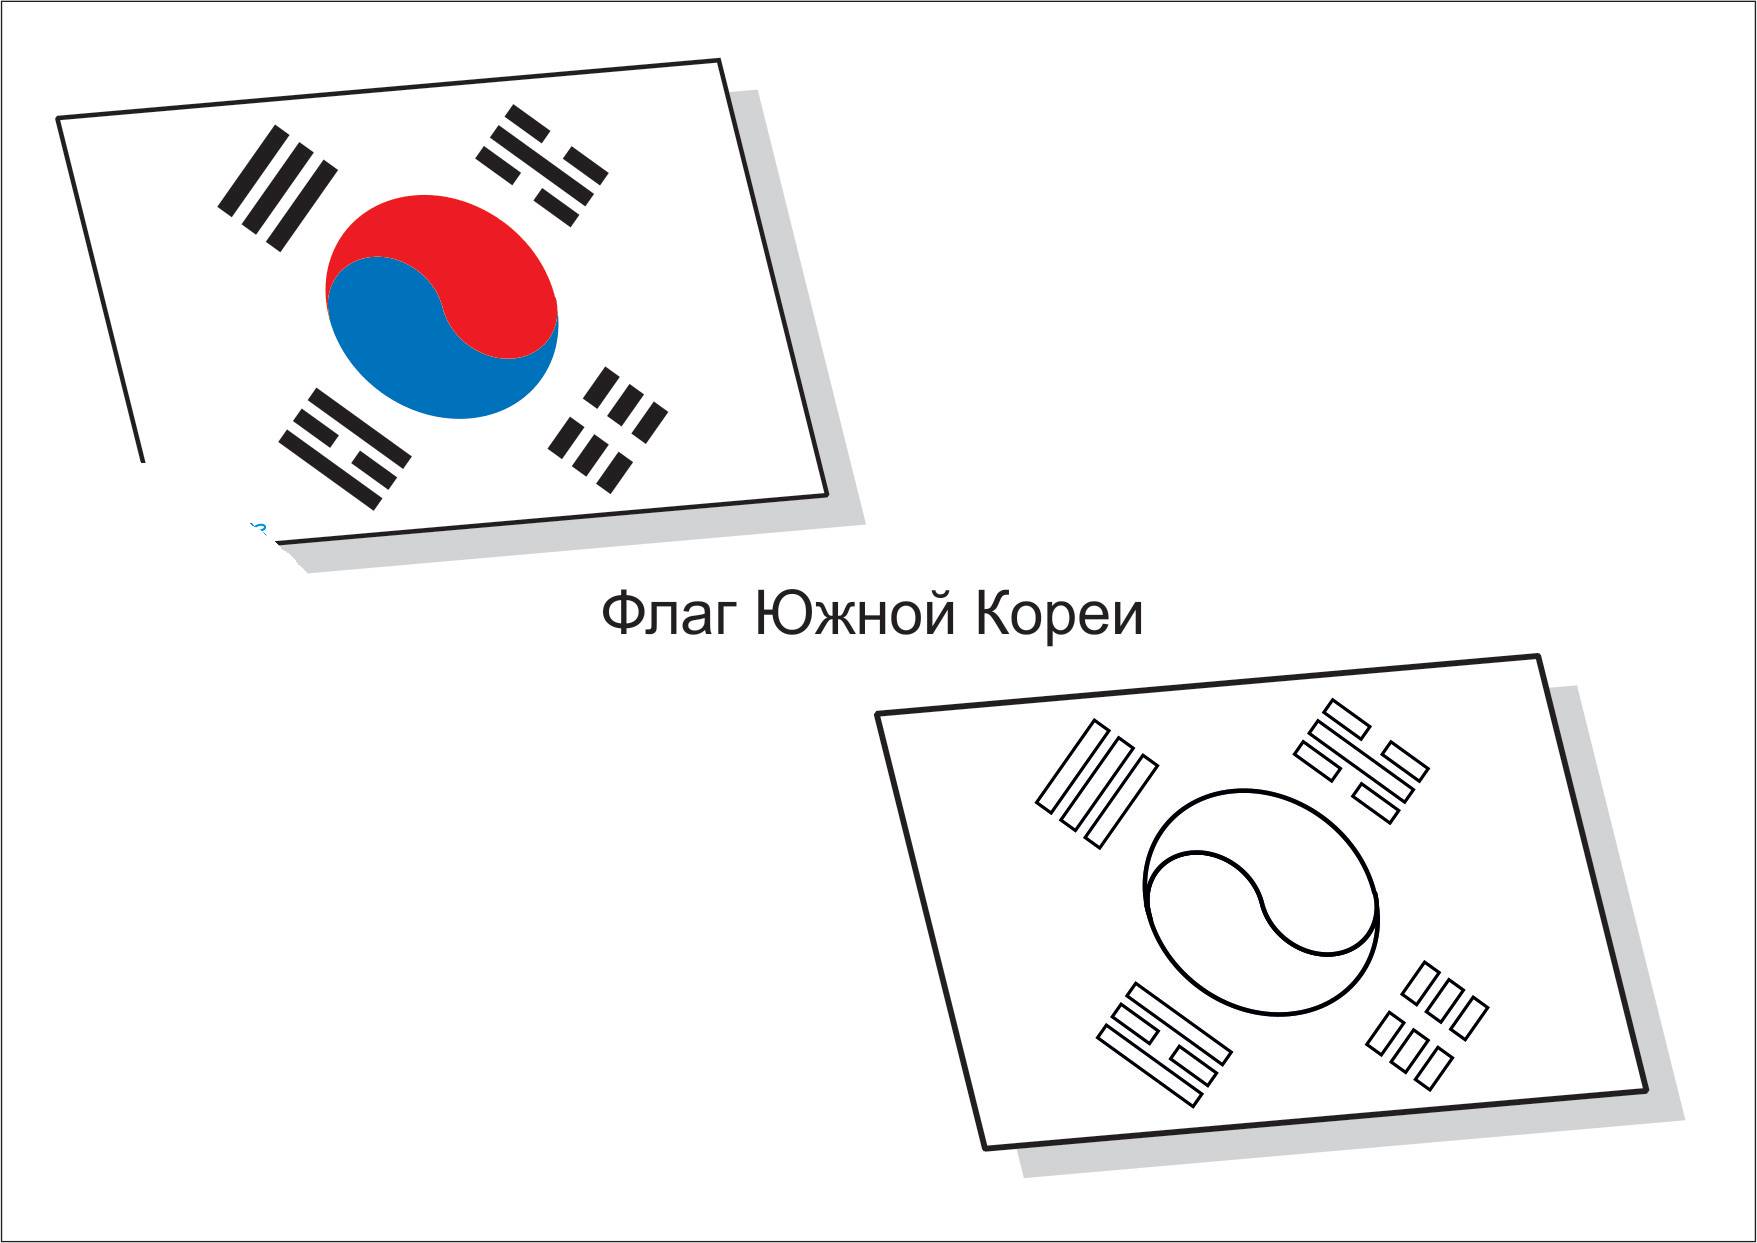 Flag of south korea